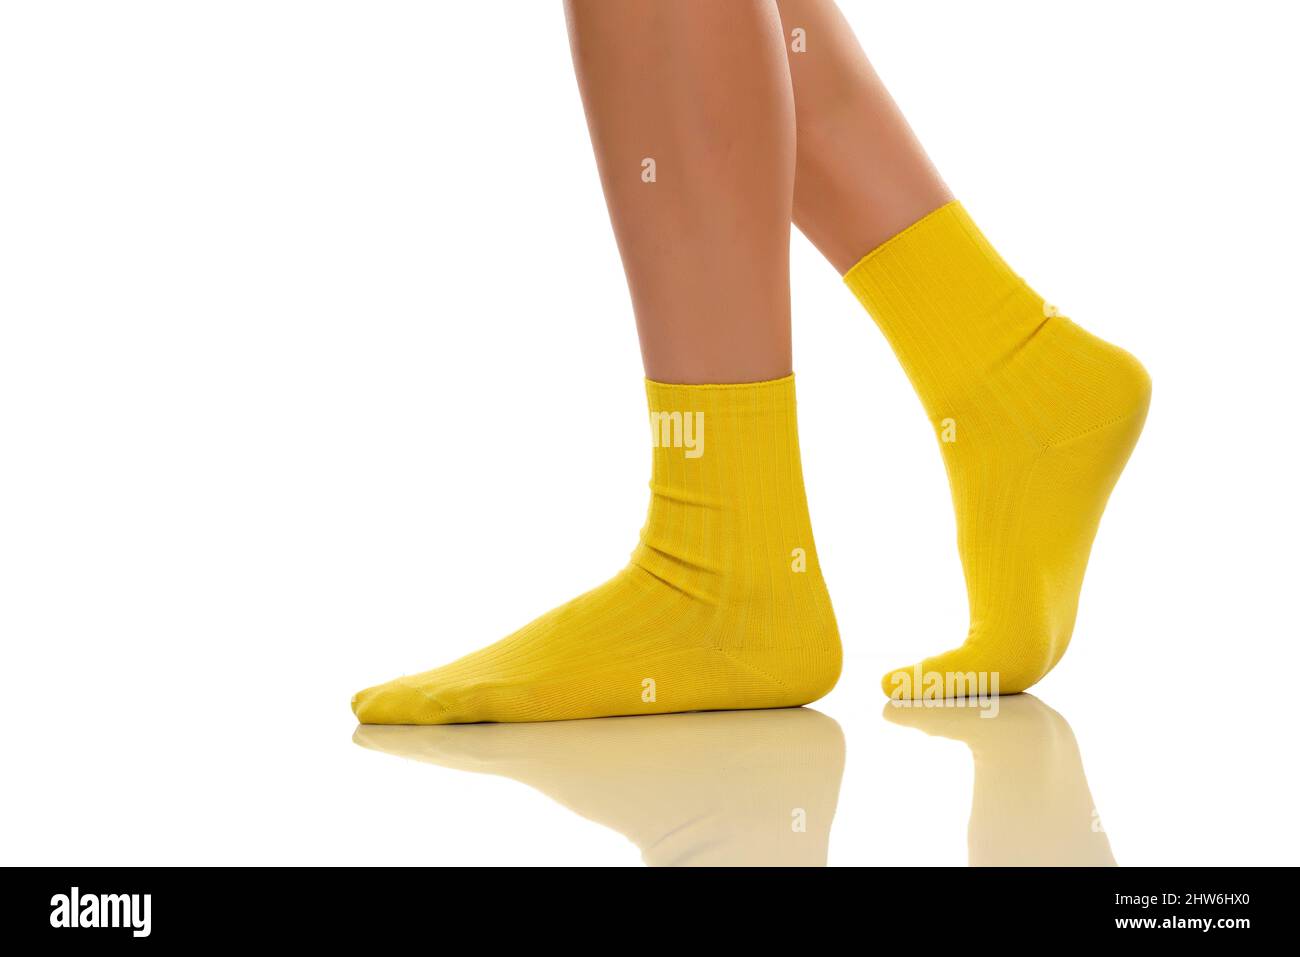 Weibliche Beine FüßE Fuß Schaufensterpuppe Socke Display Form Kurze Strumpf WY5